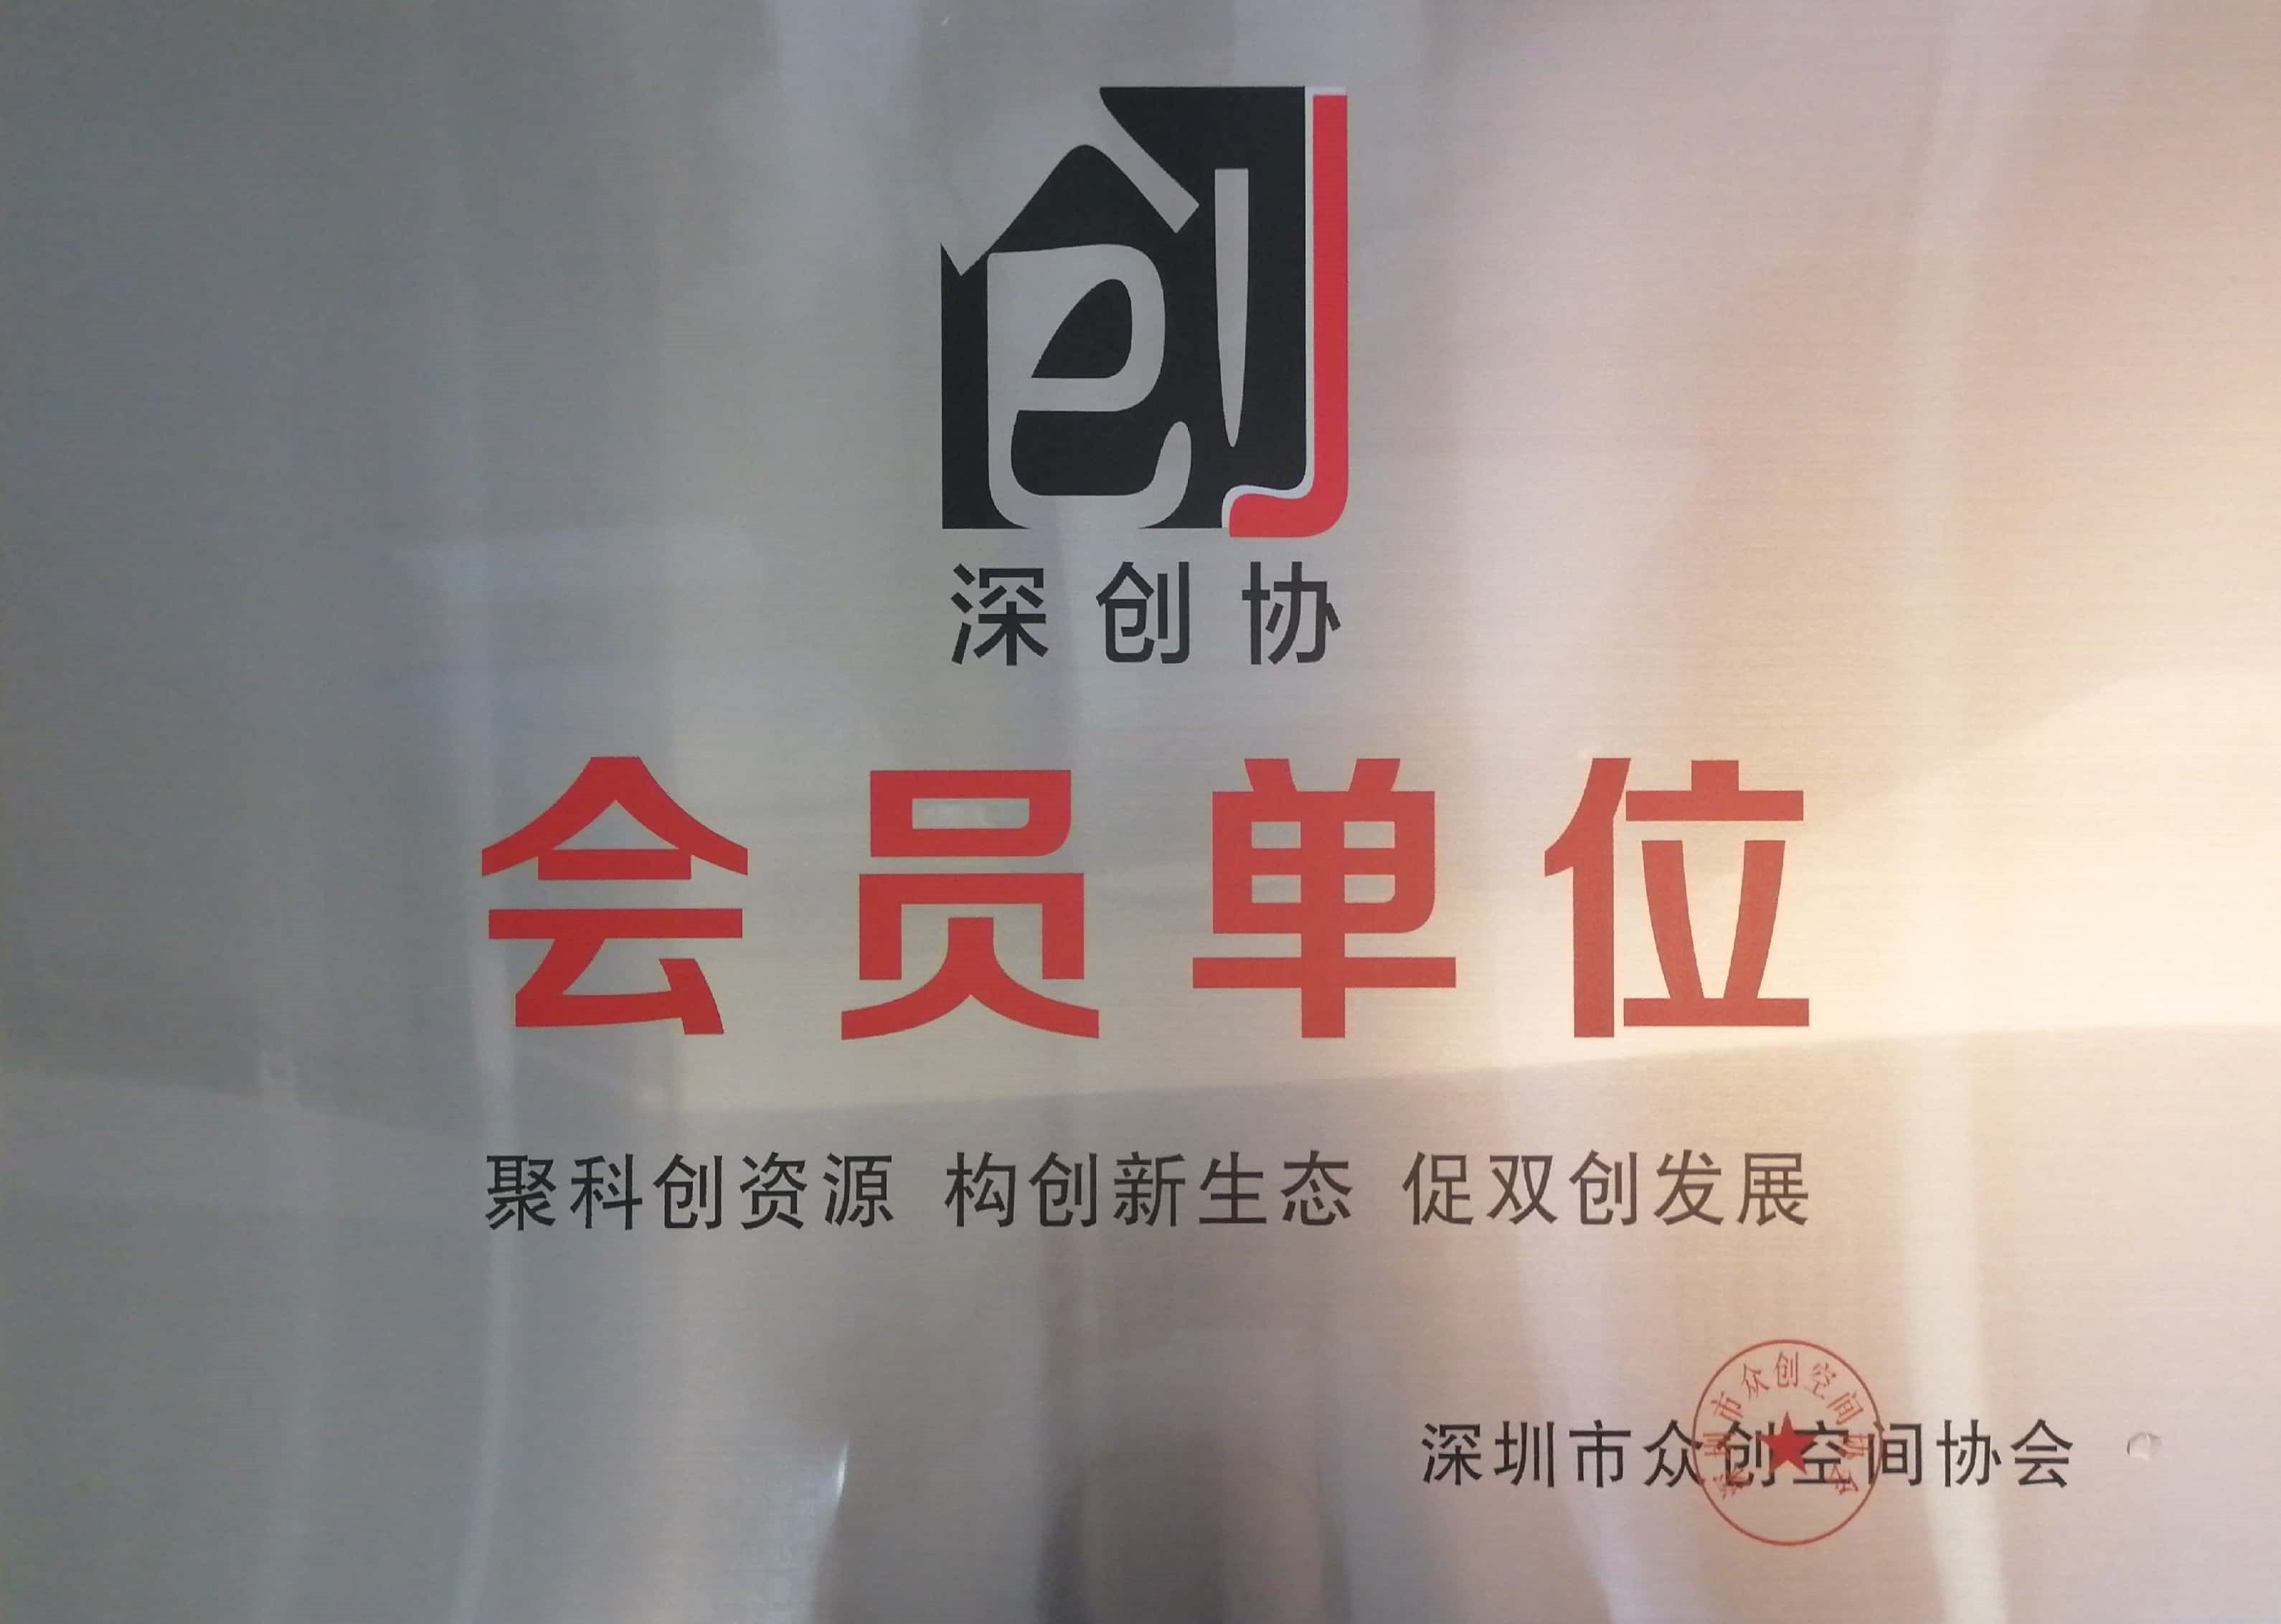 创富港成为深圳市众创空间协会会员单位，共推双创蓬勃发展